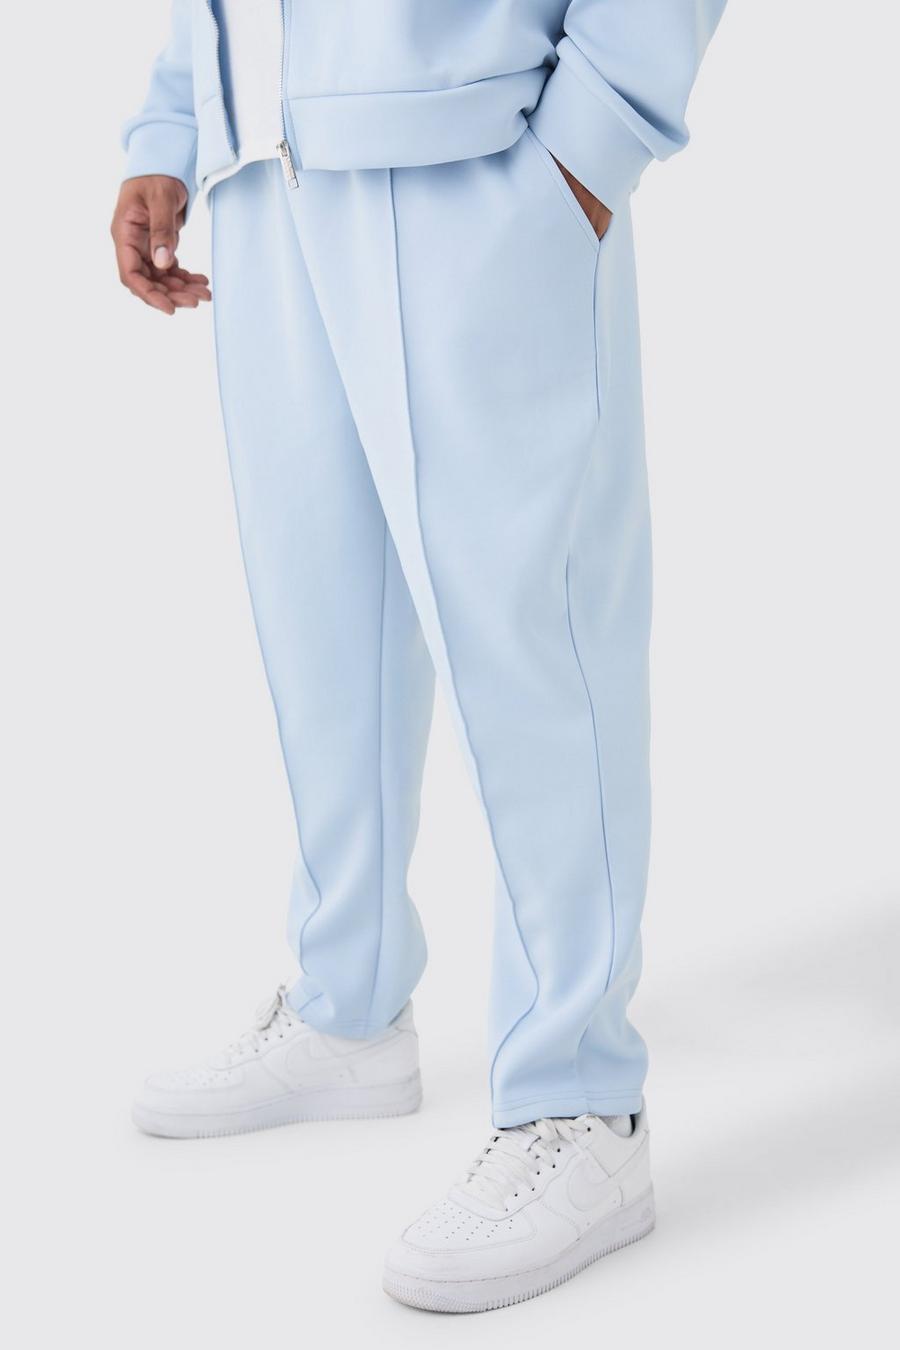 Pantalón deportivo Plus ajustado crop de scuba, Light blue